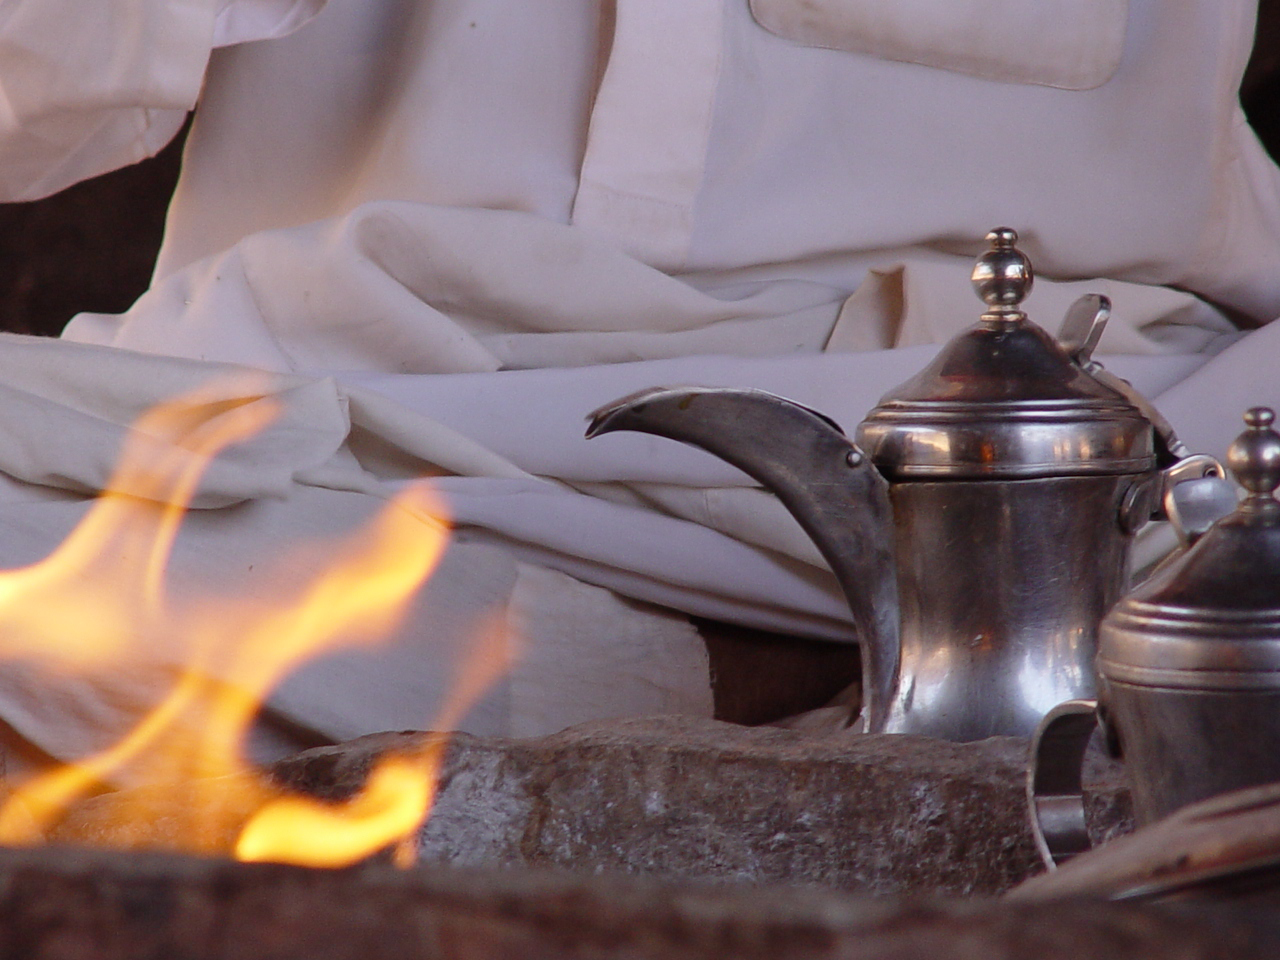 Jordan; Wadi Rum - Coffee Pot